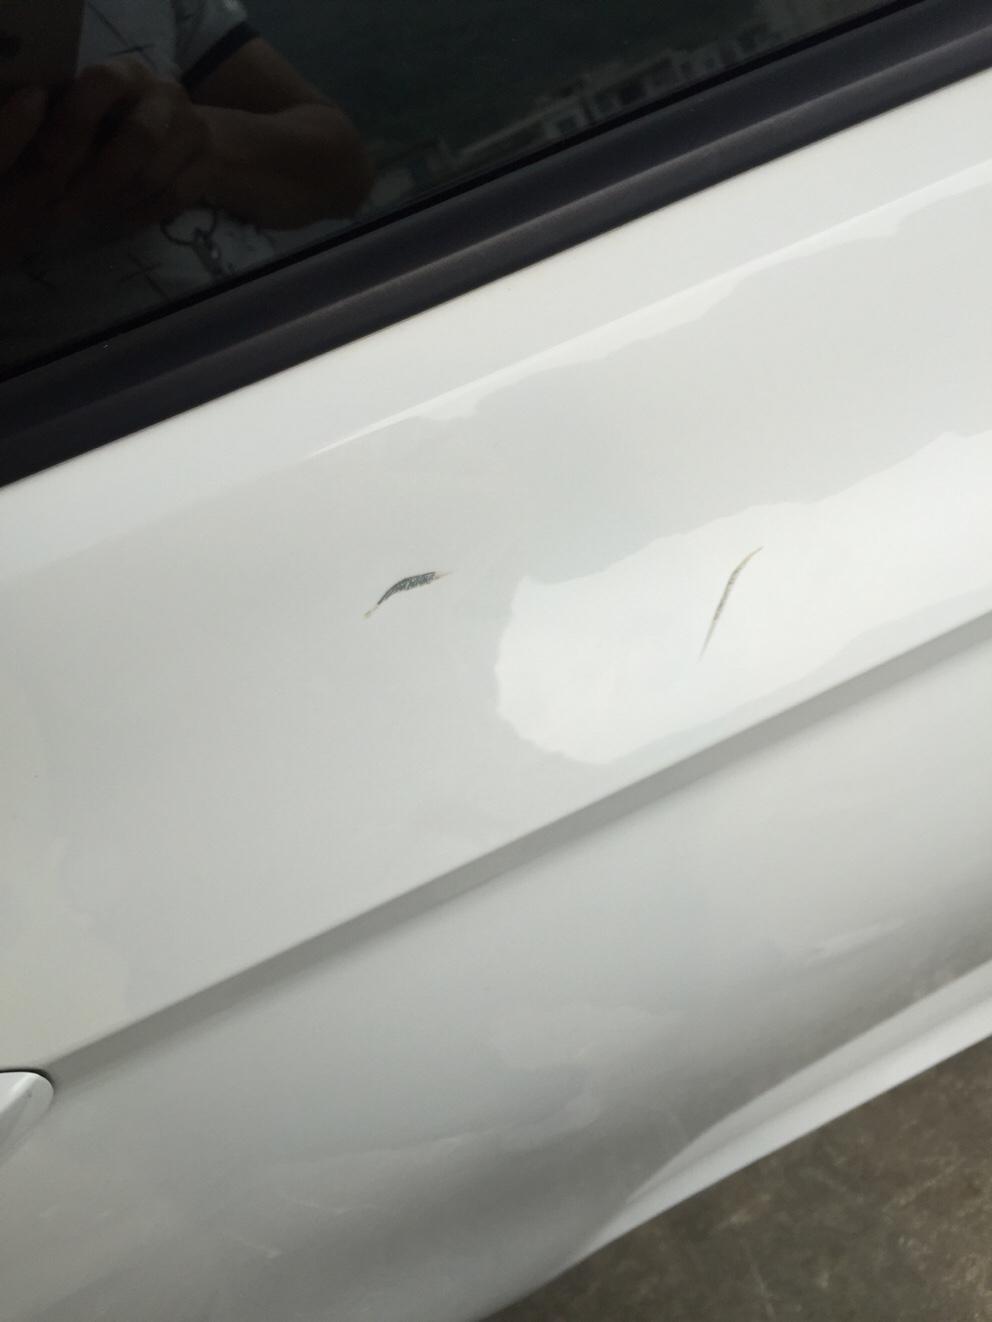 凌渡车门被刮掉油漆，轮毂被刮伤了，门槛底盘凹进去一点，修复大大概多少钱